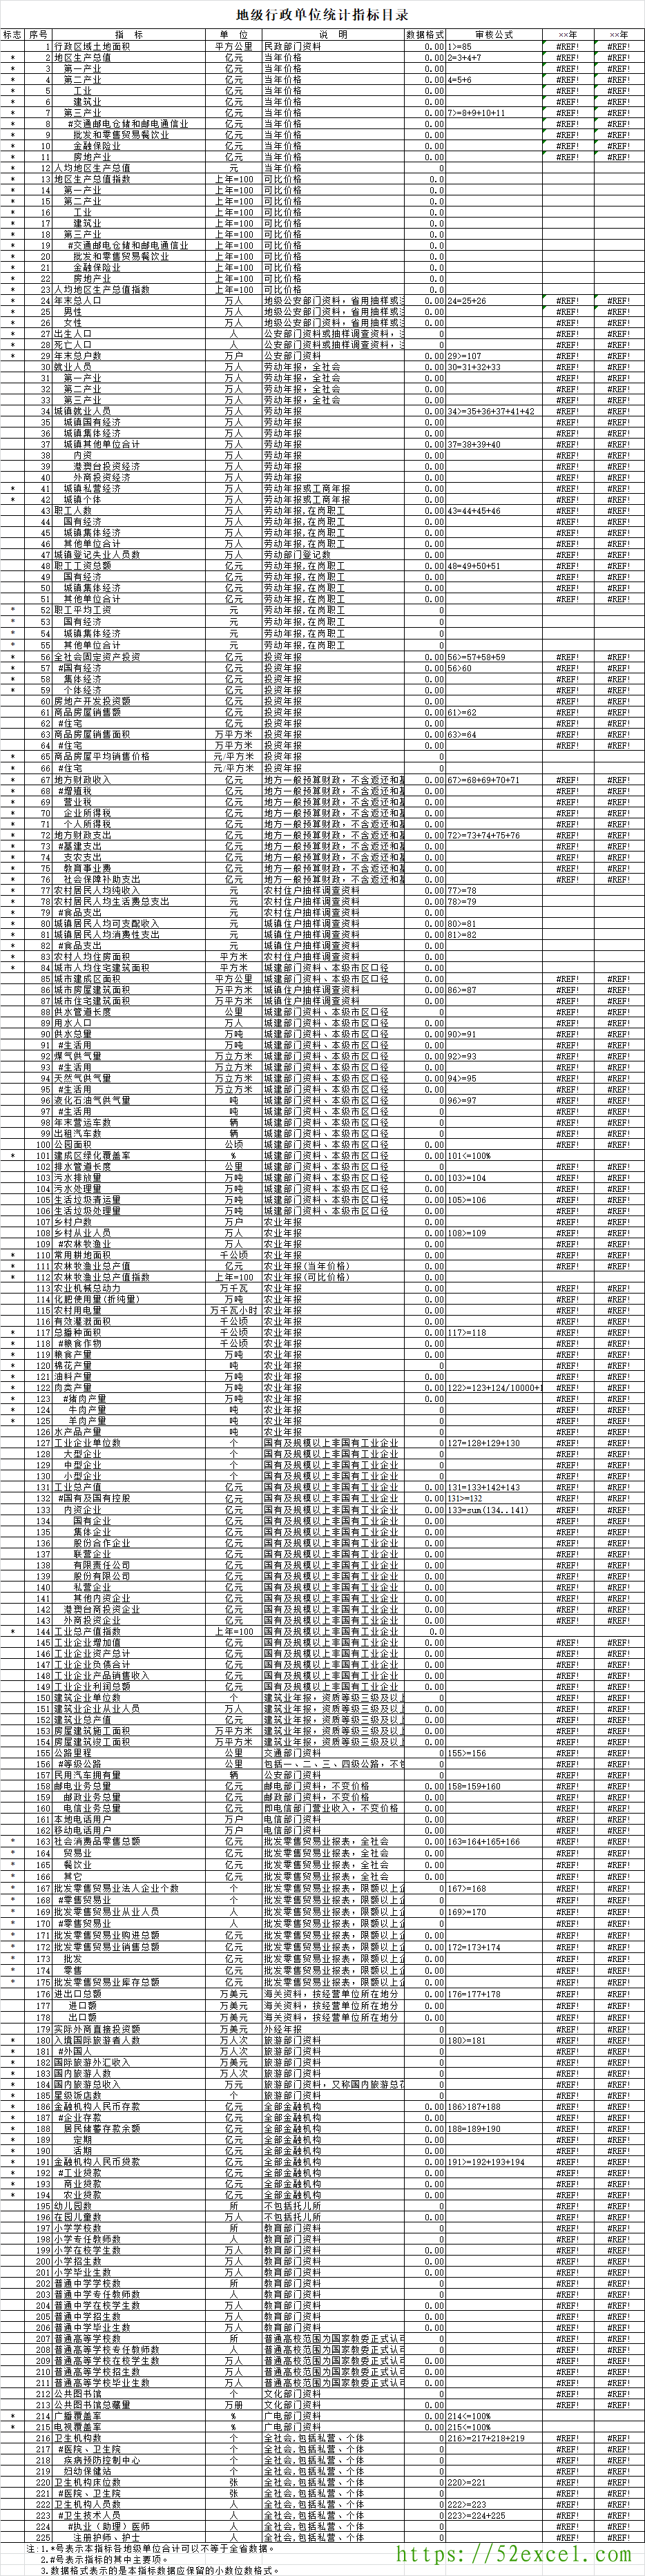 地级行政单位统计指标目录Excel模板